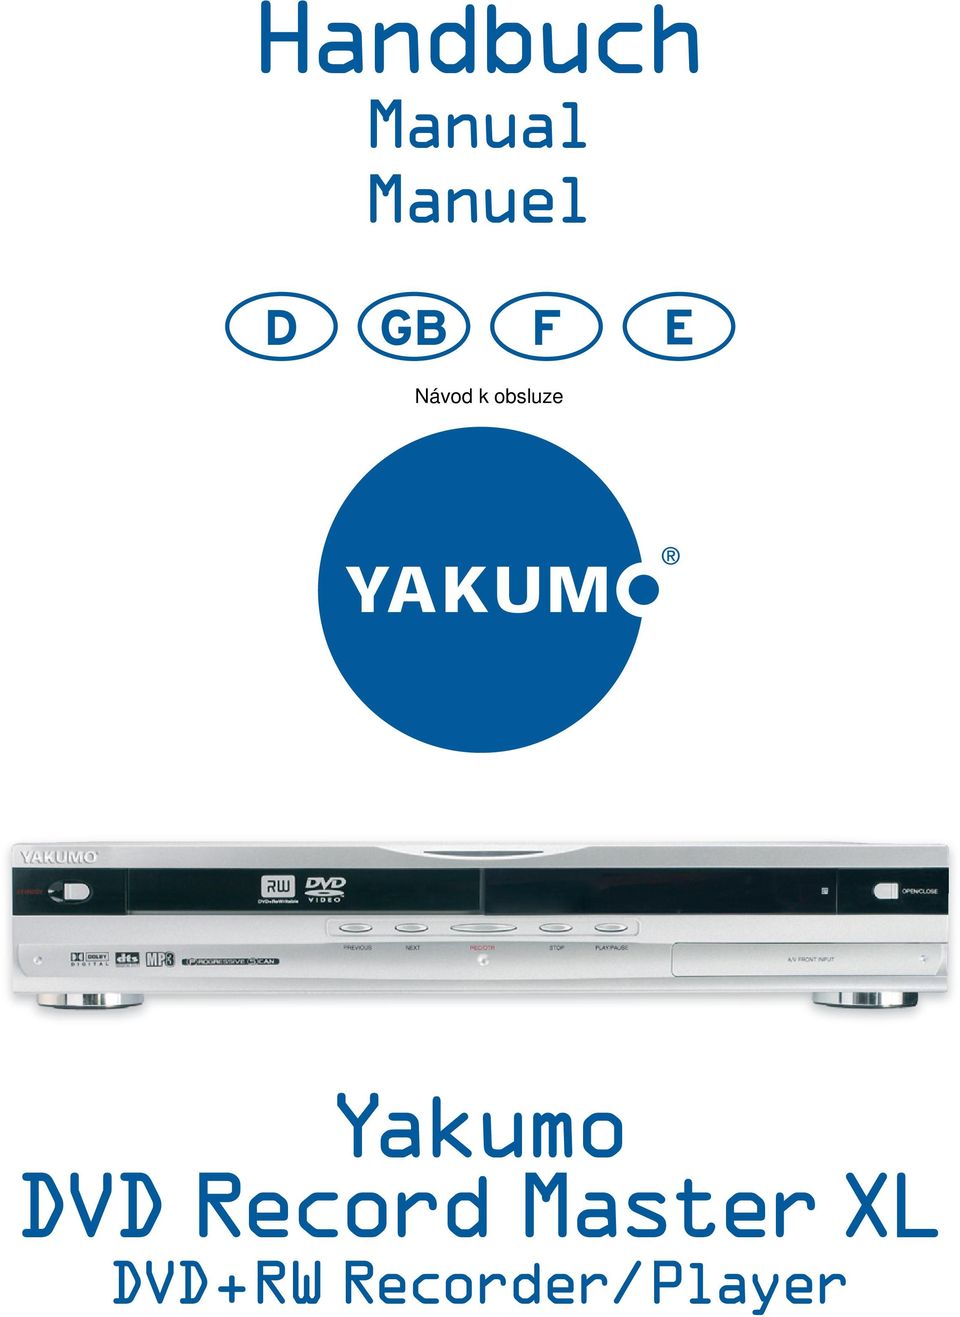 Yakumo DVD Record